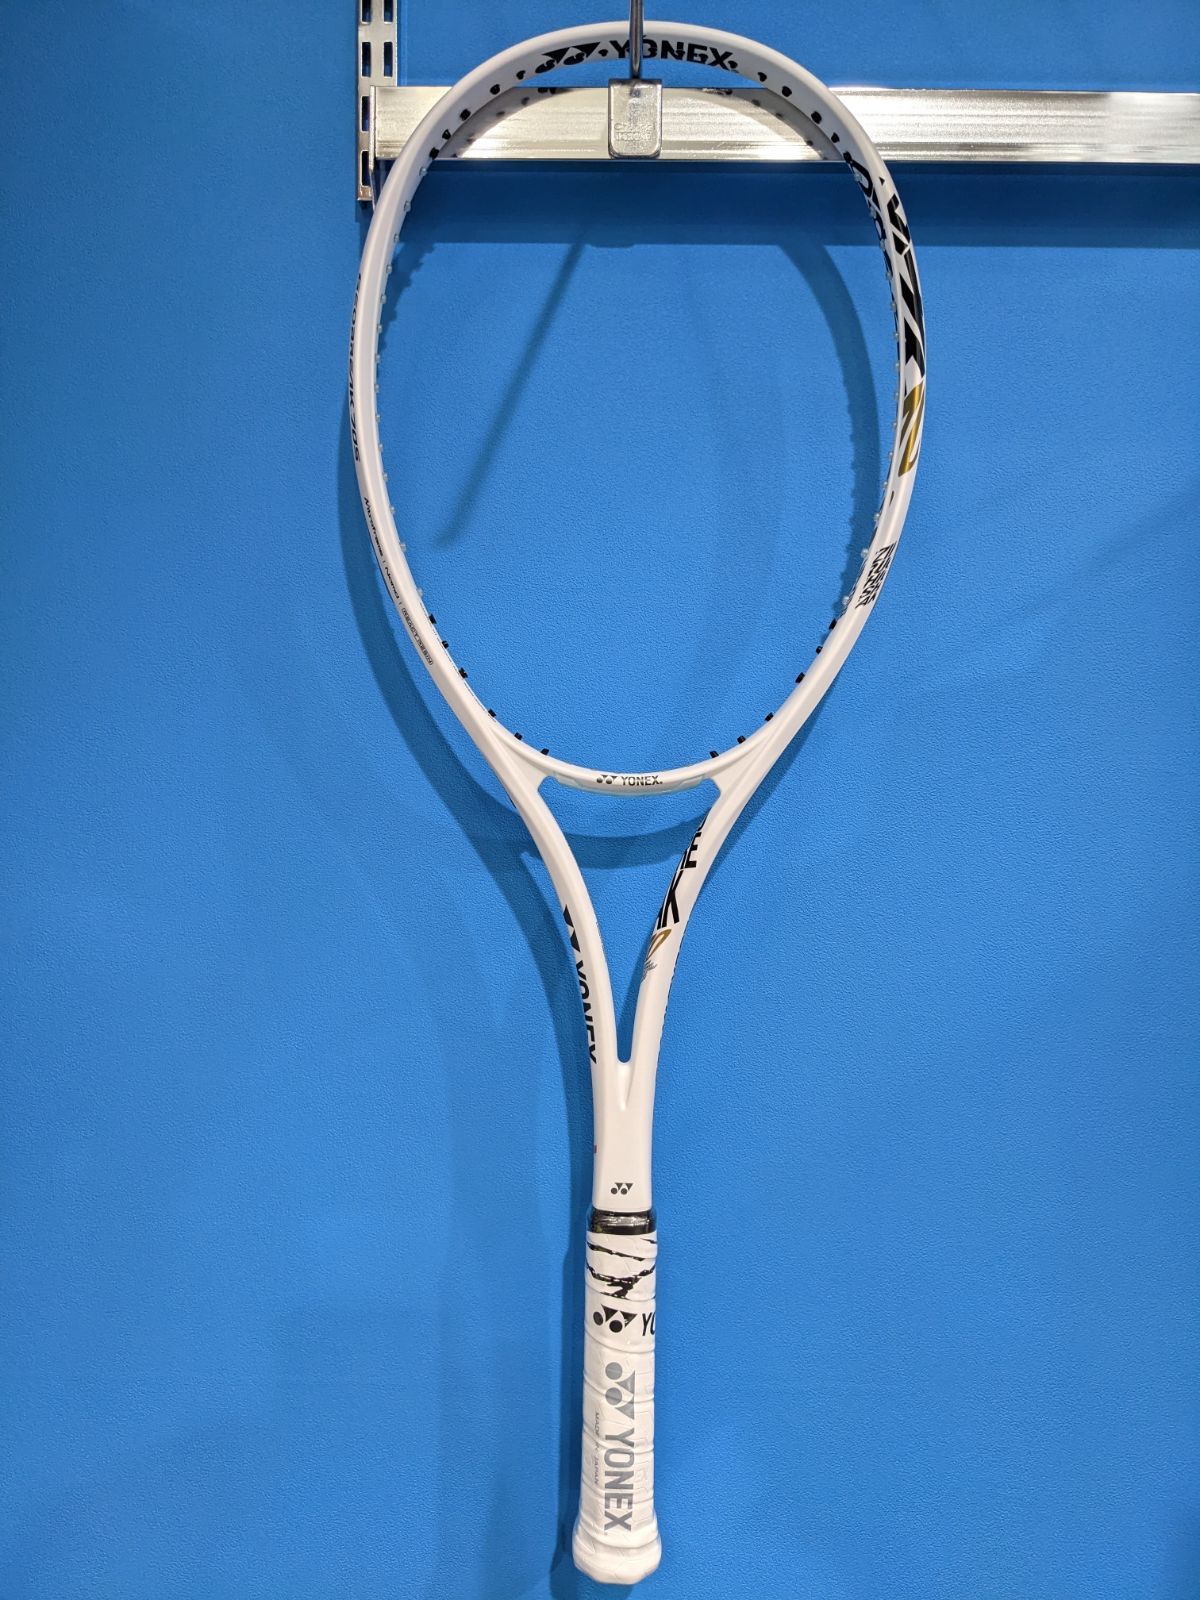 ヨネックス ソフトテニス ラケット ジオブレイク70S | agb.md